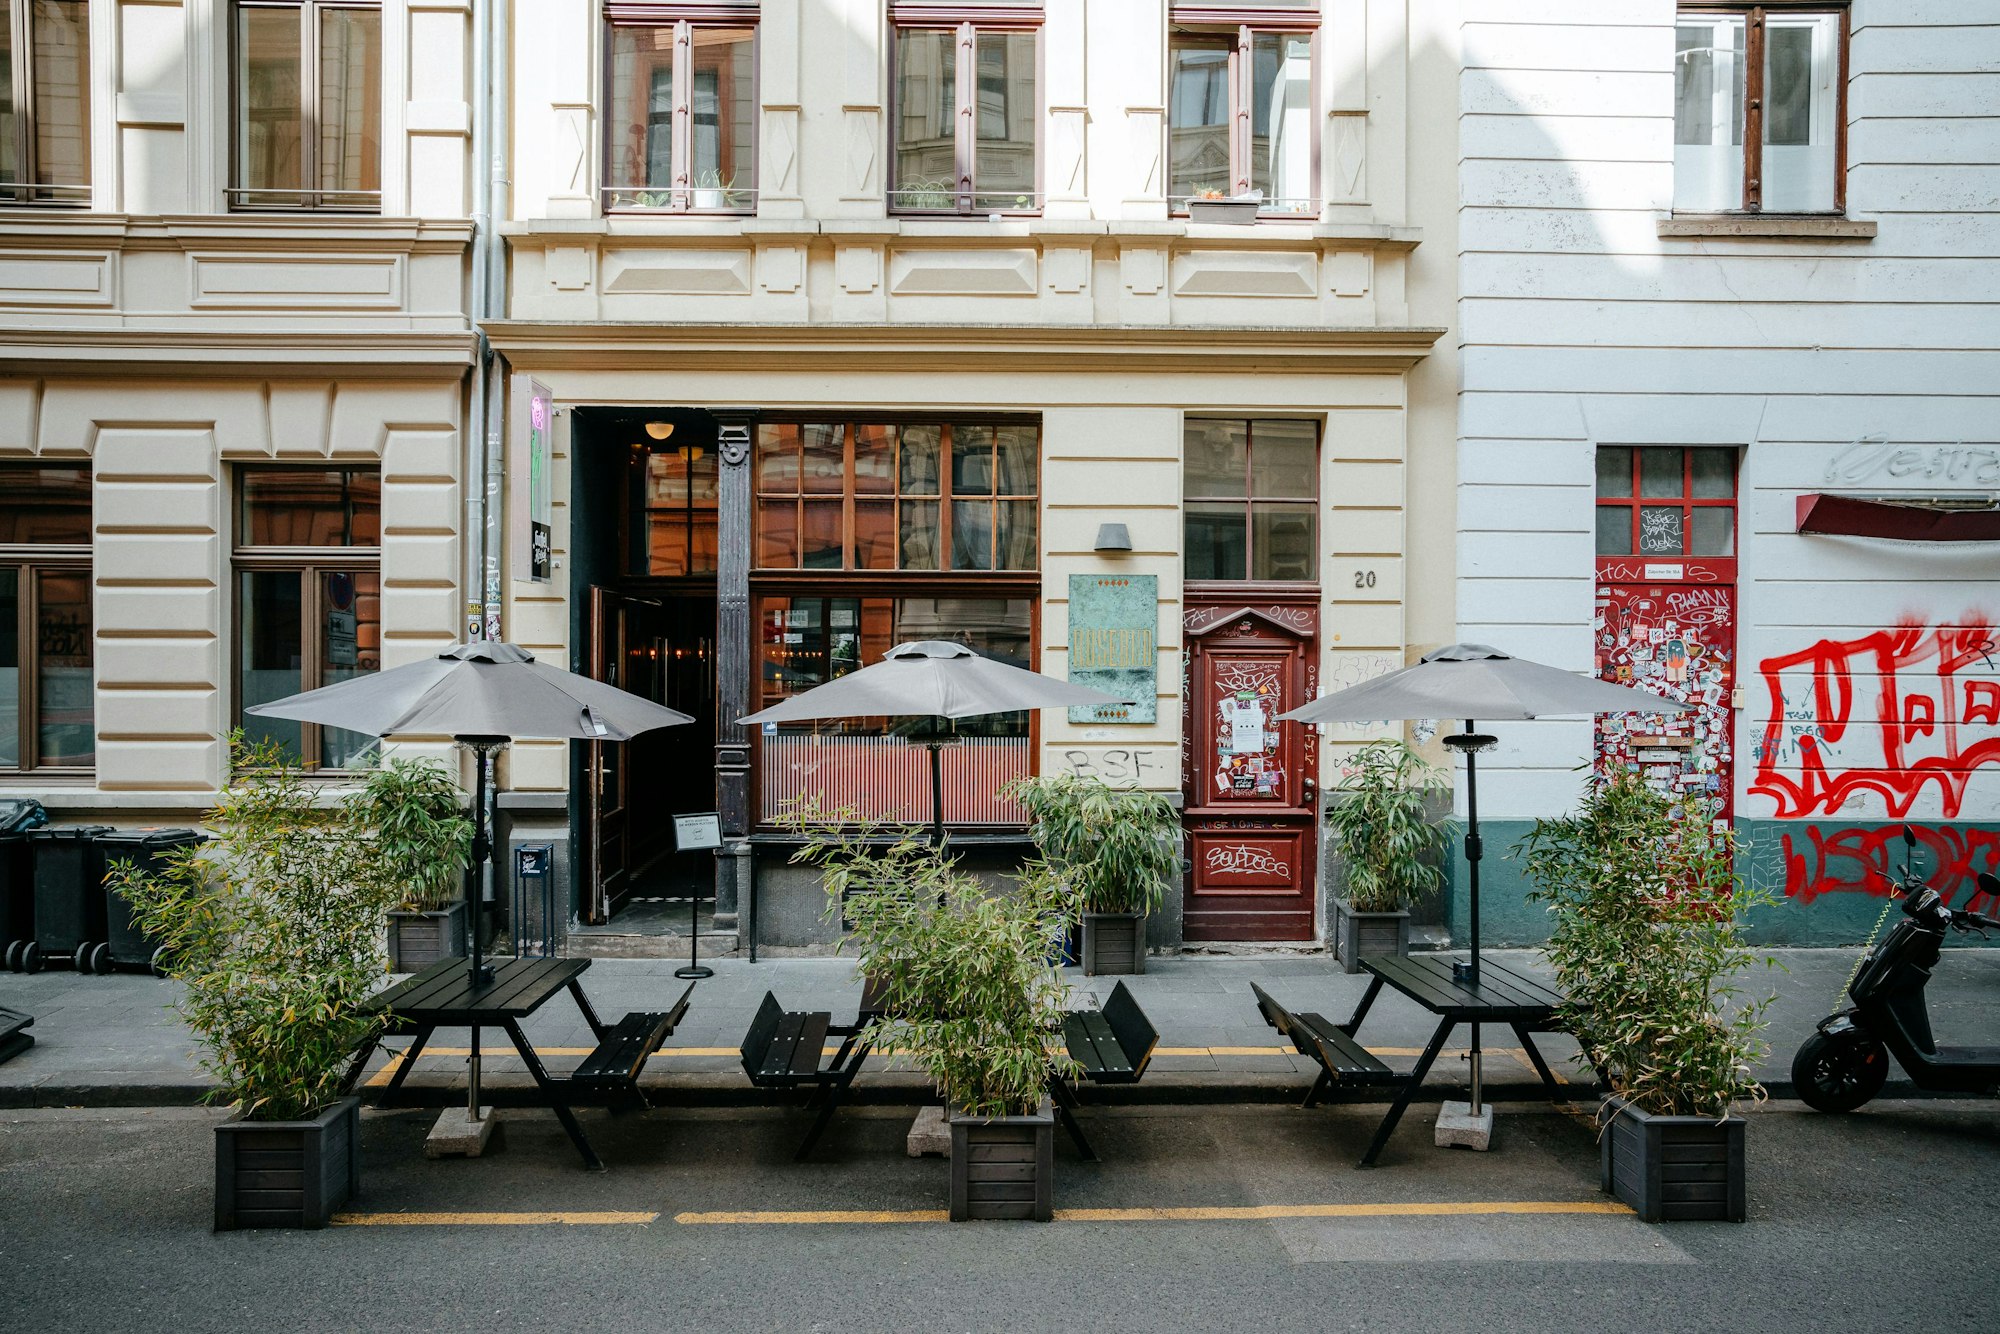 Außenansicht der Cocktail-Bar "Rosebud" in der Kölner Innenstadt